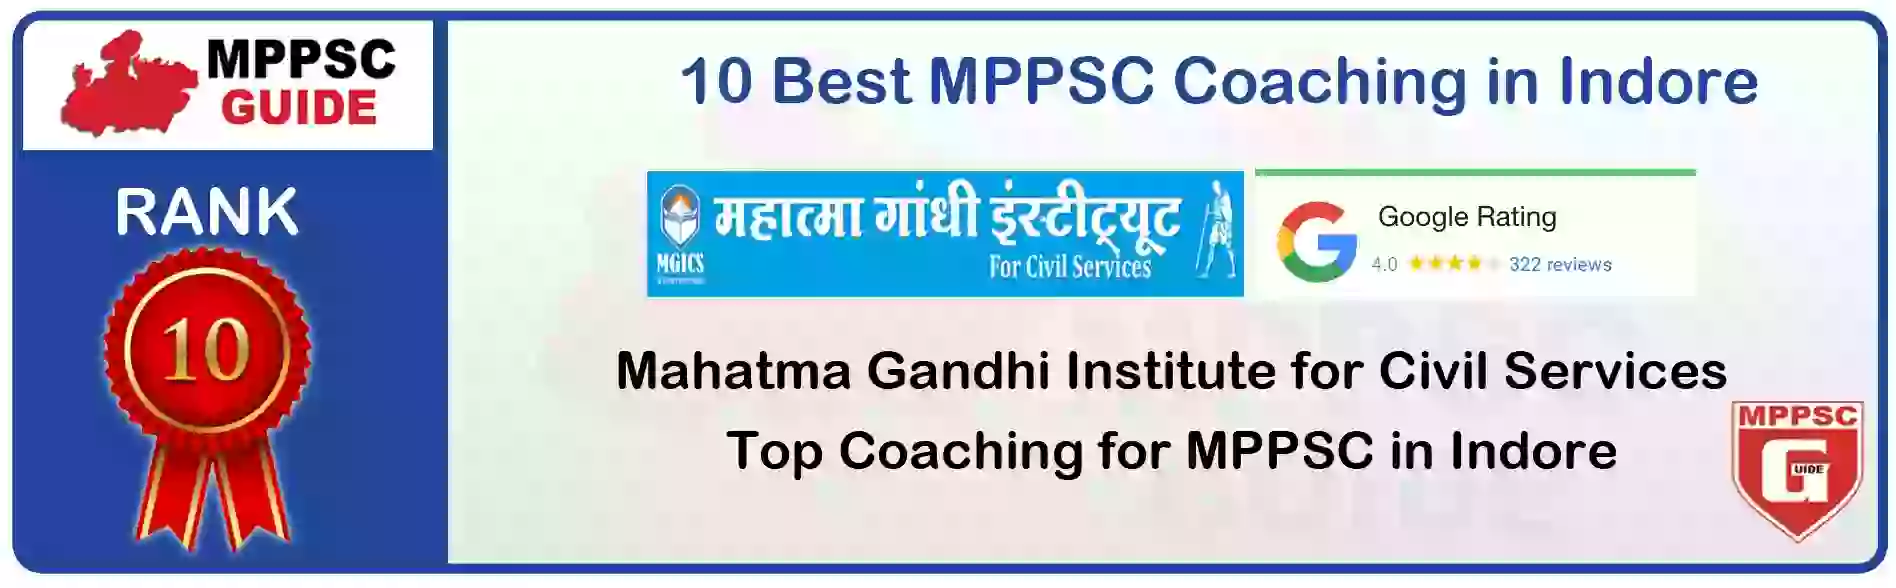 MPPSC Coaching in Mandla, MPPSC Coaching Institute In Mandla, Best MPPSC Coaching in Mandla, Top 10 MPPSC Coaching In Mandla, best mppsc coaching institute in mandla, MPPSC Coaching Classes In Mandla, MPPSC Online Coaching In Mandla, mppsc coaching in Mandla bhanwarkua